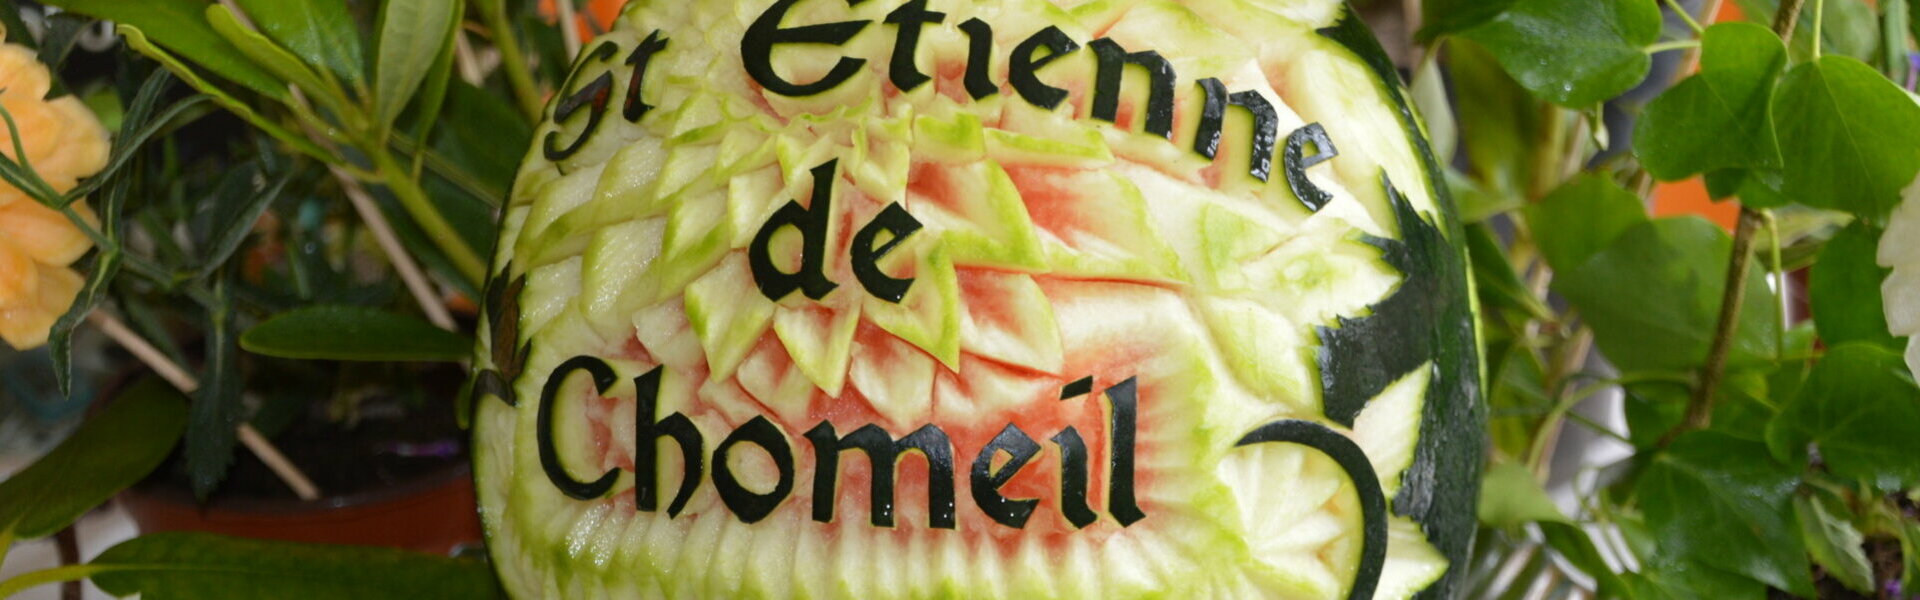 Bienvenue à Saint-Etienne-de-Chomeil